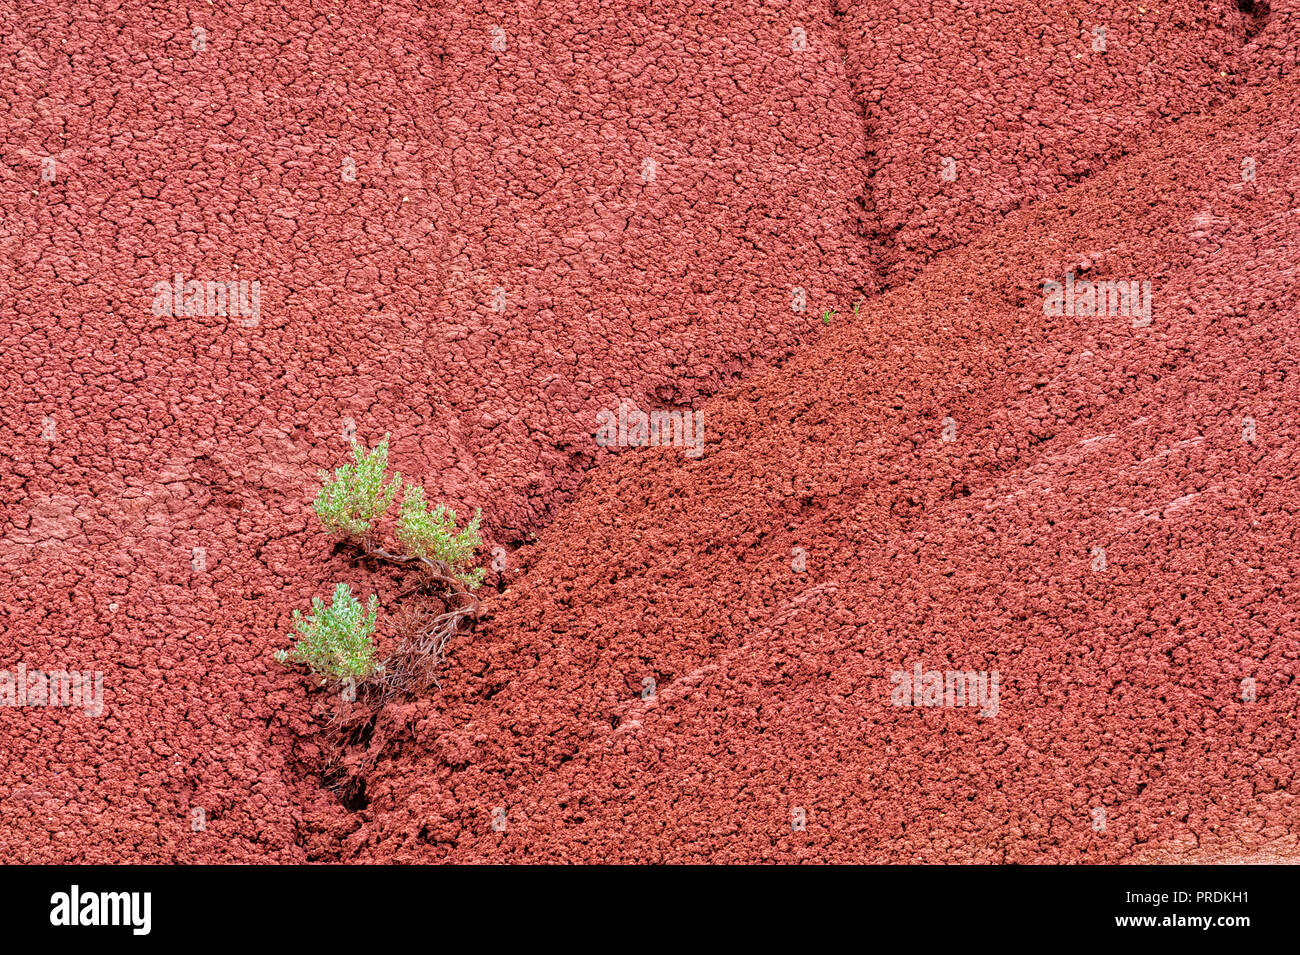 Montículo de piedras de arcilla roja, es un fondo de contraste de textura a una artemisa creciendo en la grieta. Foto de stock